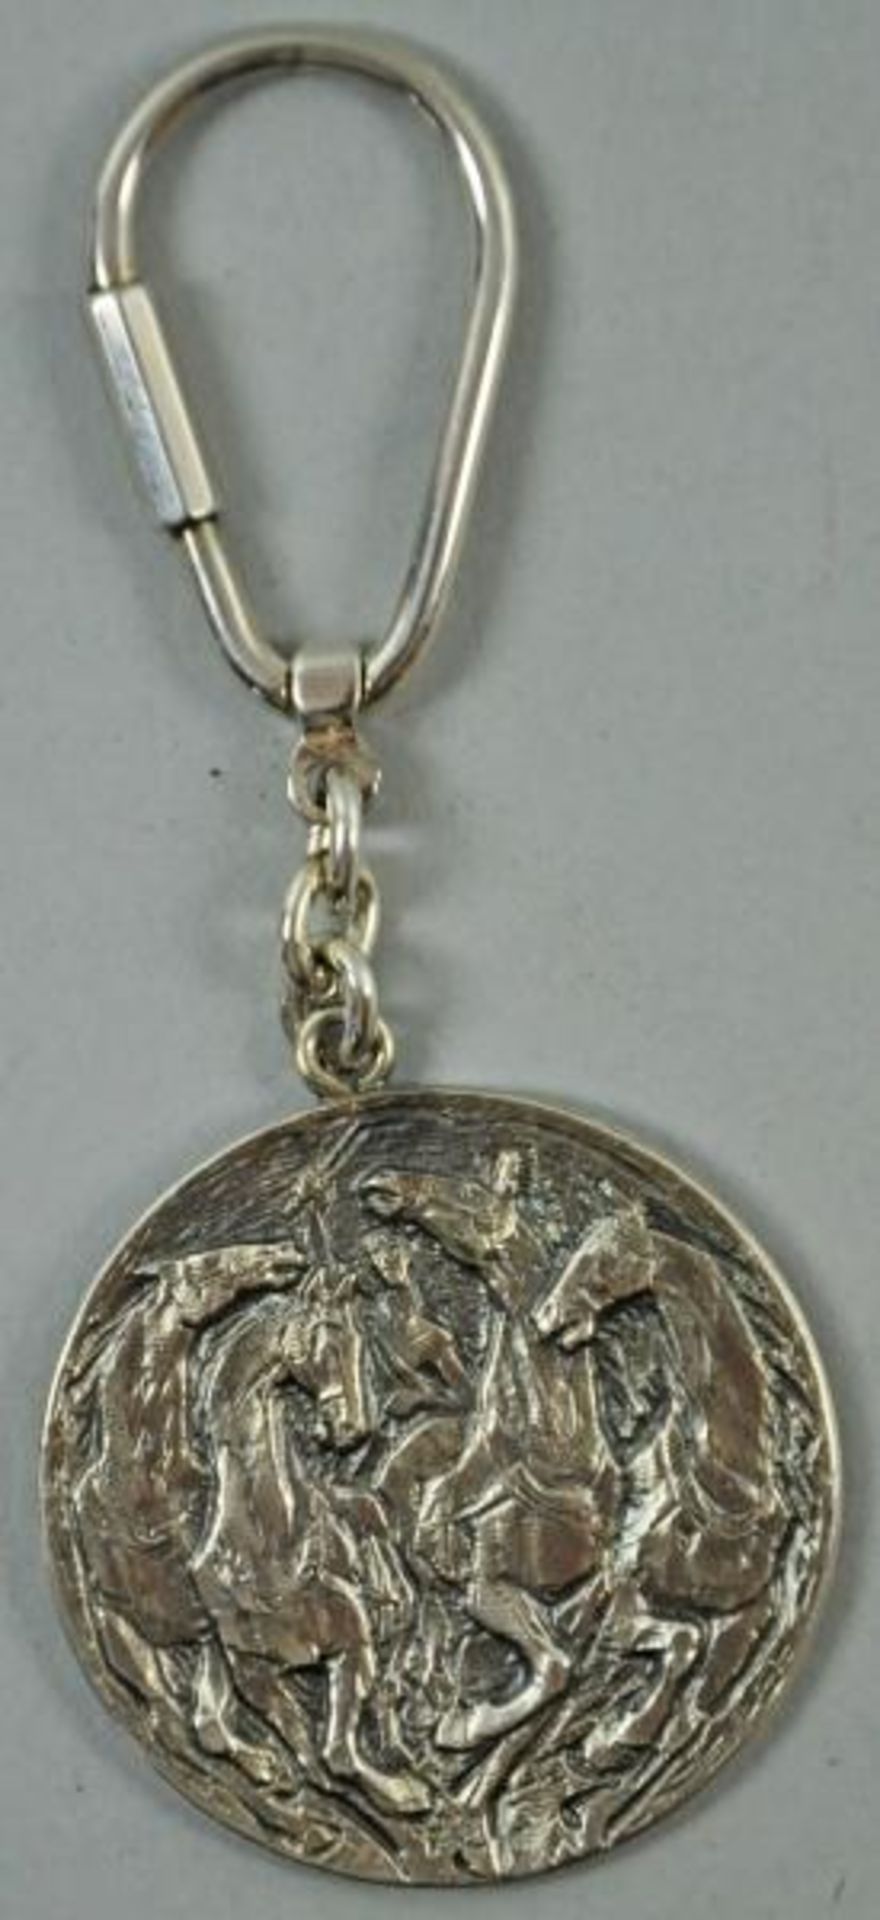 4 SCHLÜSSELANHÄNGER "Affe" u. "Eule", Silber 925, 62gr, L 5cm(Eule), Münze mit Quadriga, Silber 925, - Bild 4 aus 4